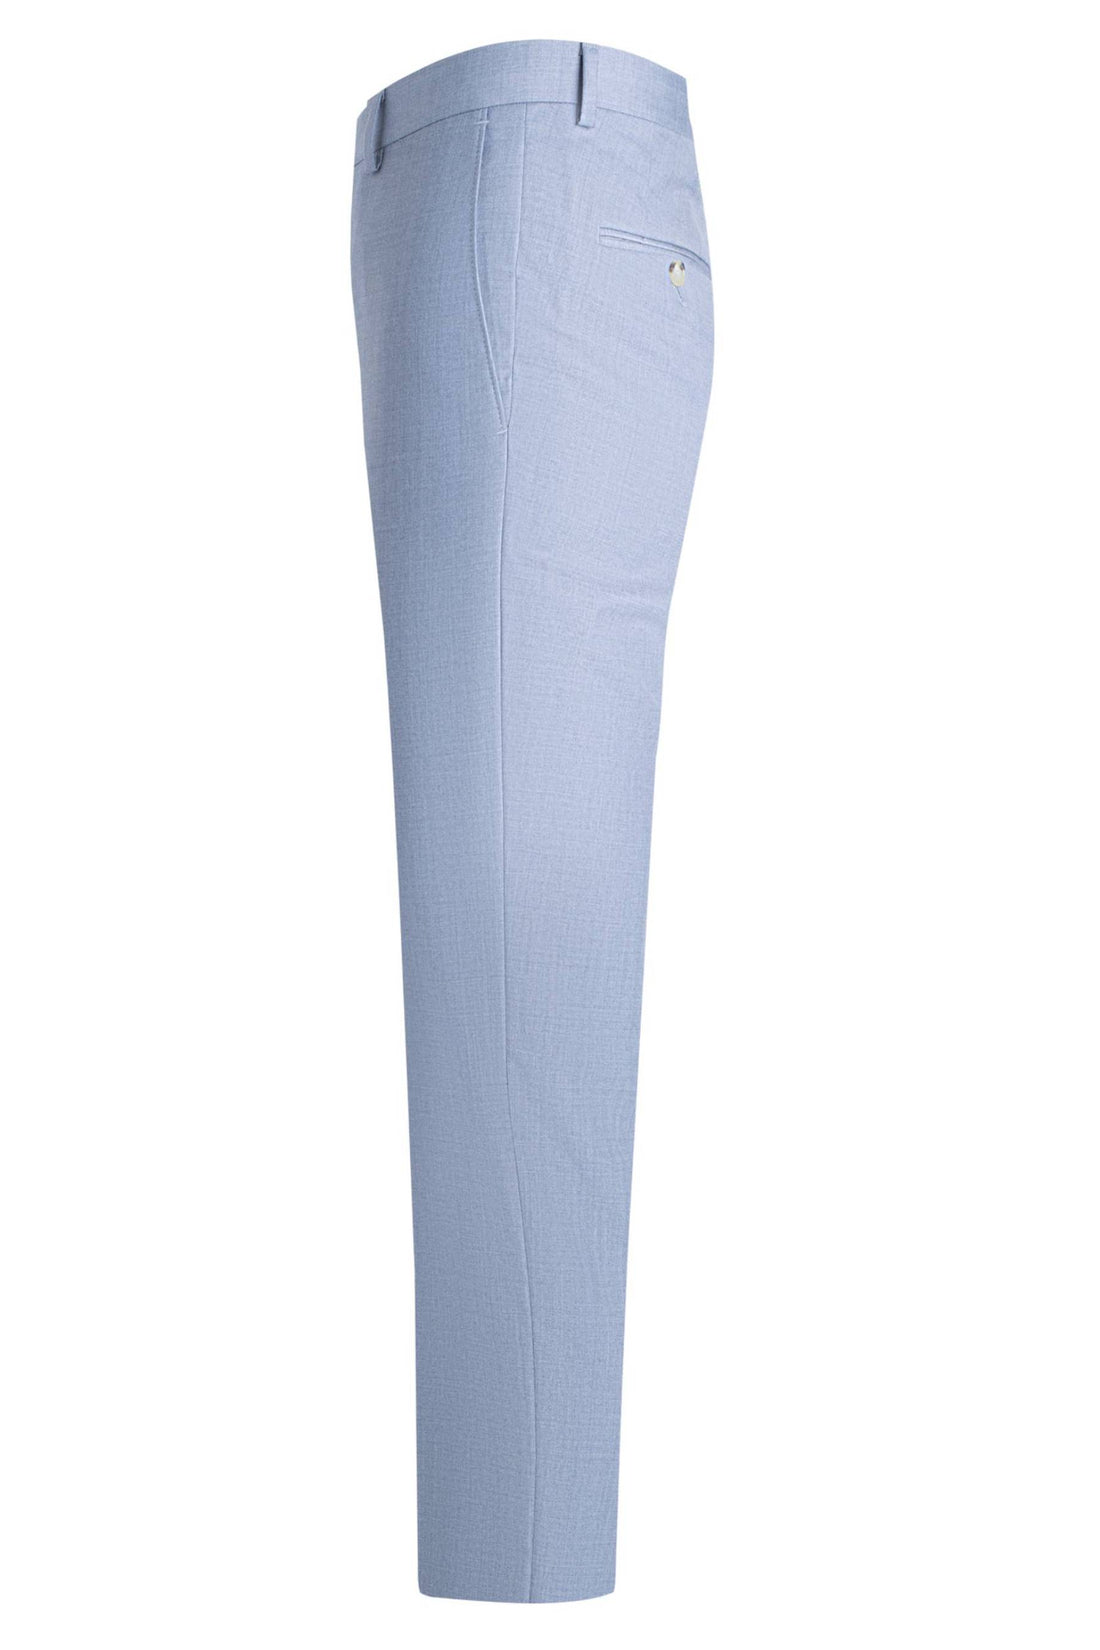 Samuelsohn Light Blue Flat Front Trousers Side